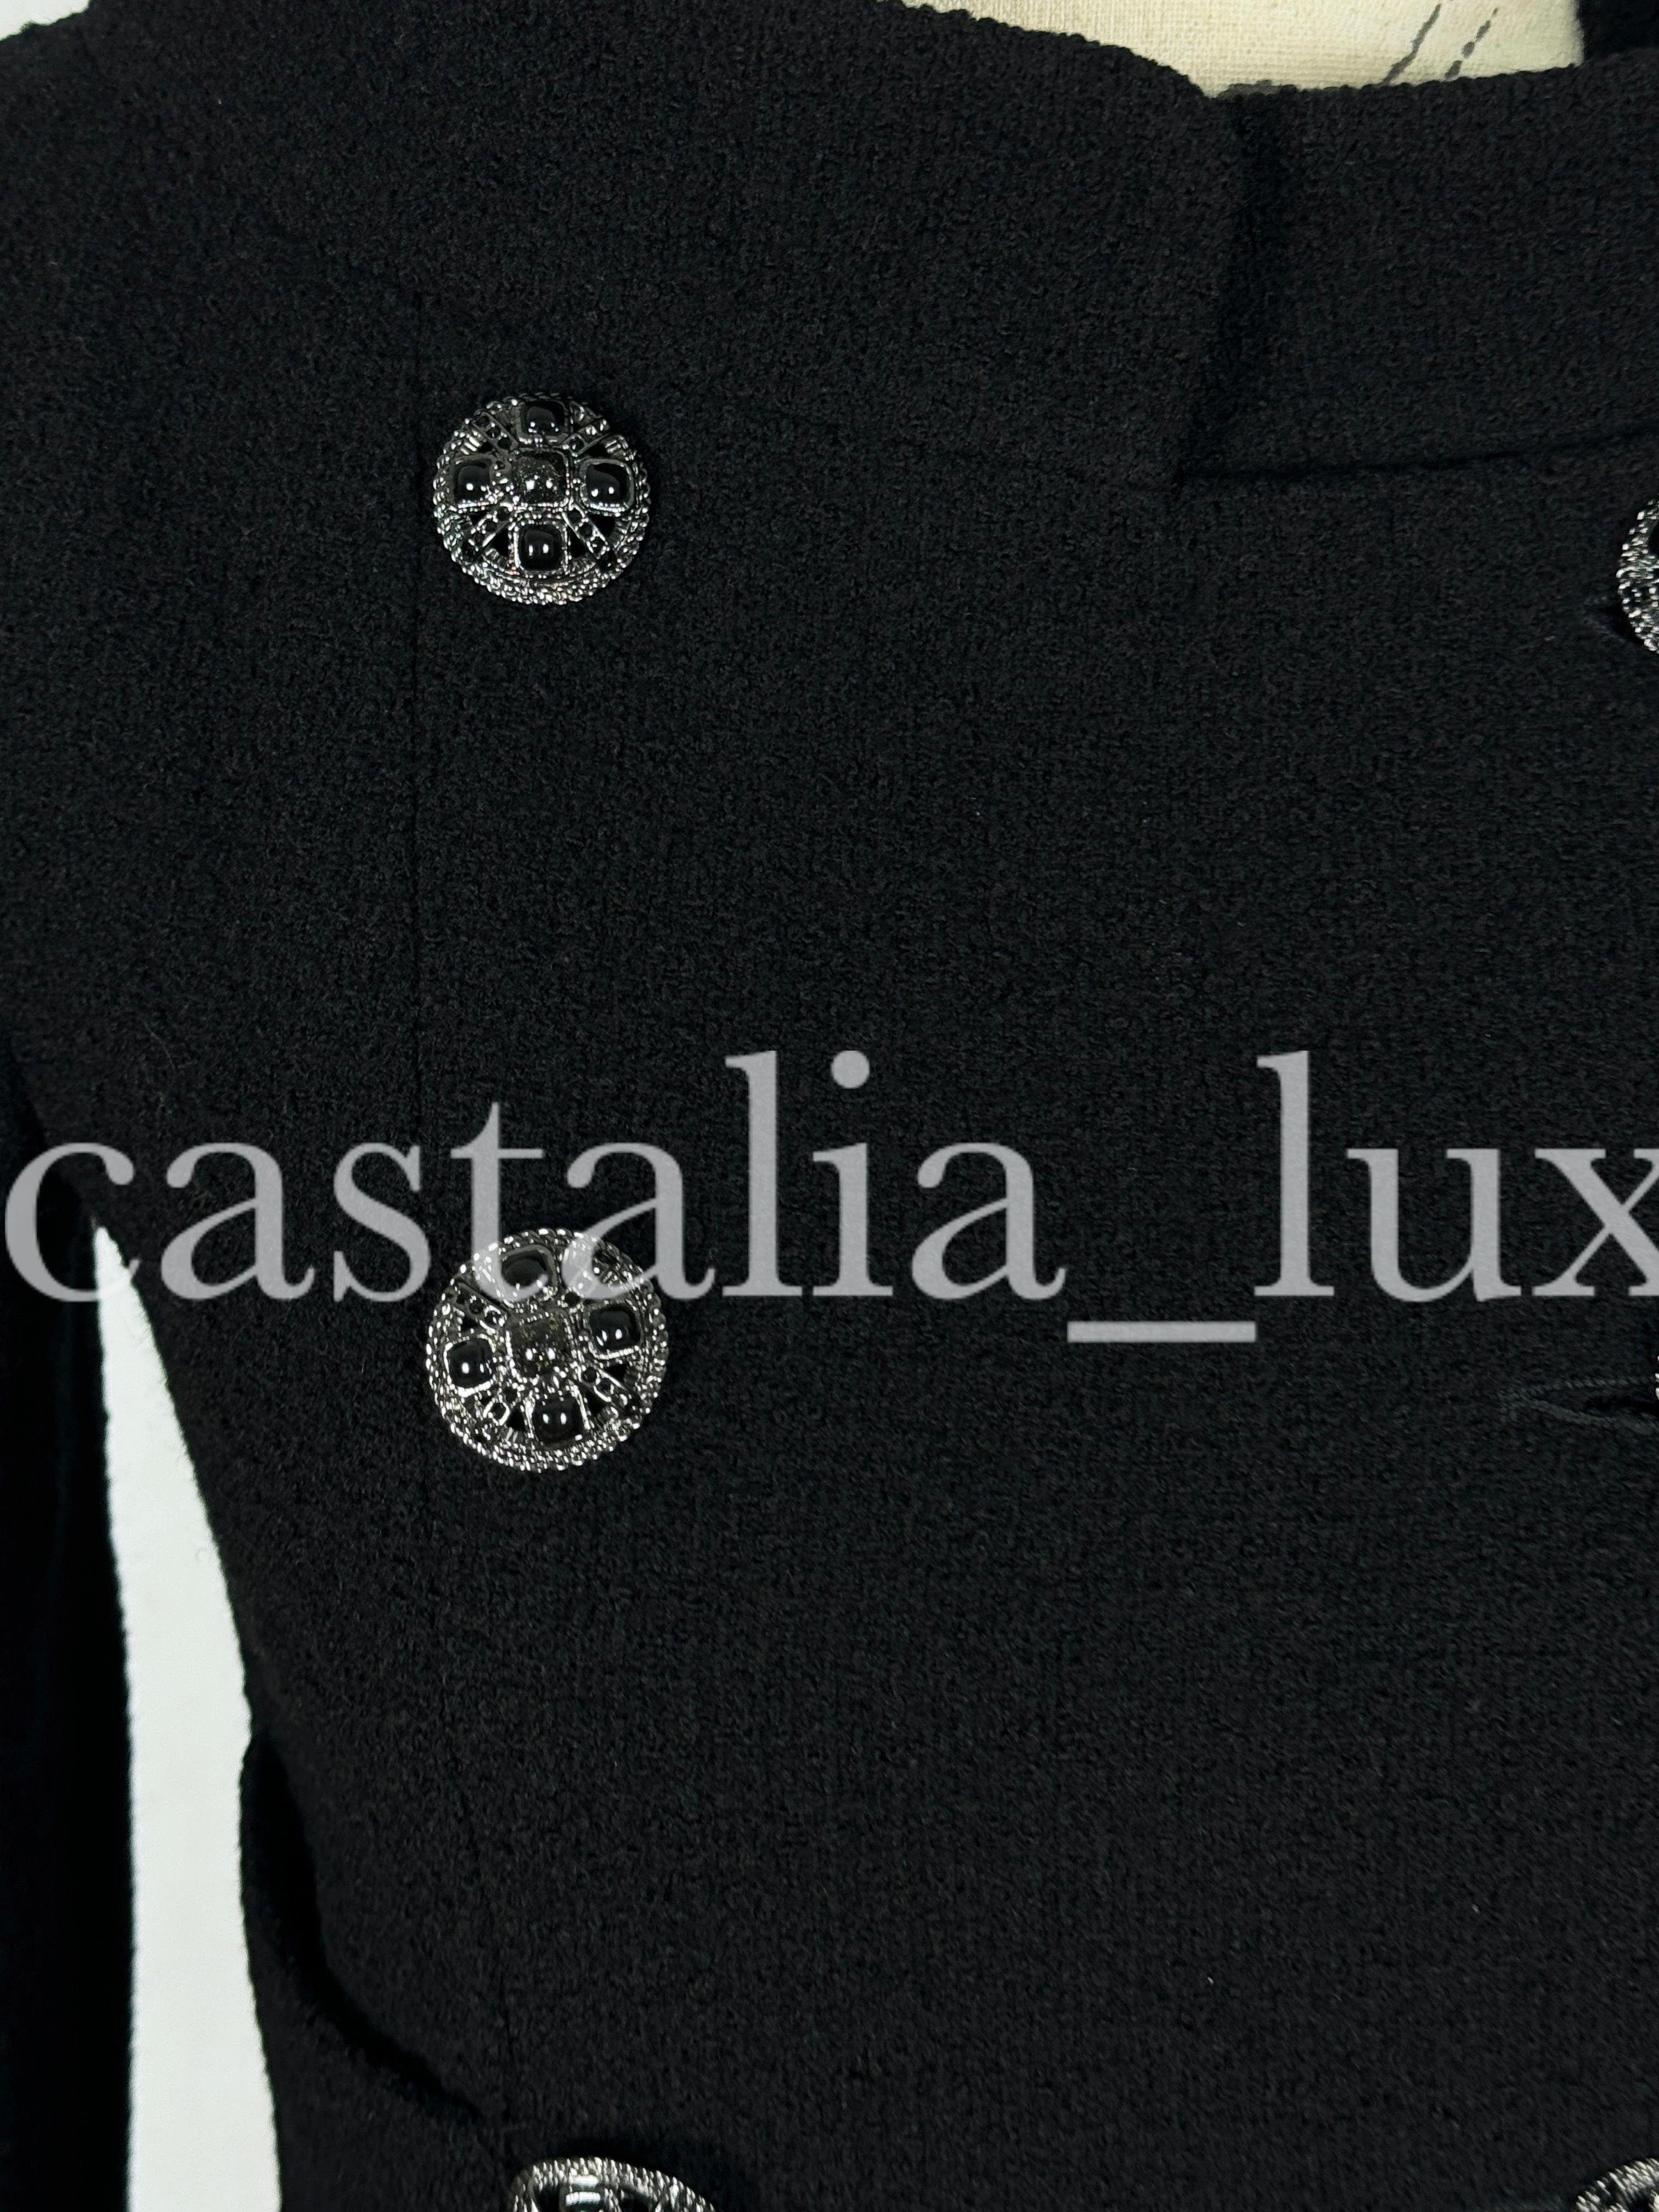 Chanel Iconic 9K$ Lady Gaga Style Black Tweed Jacket 1